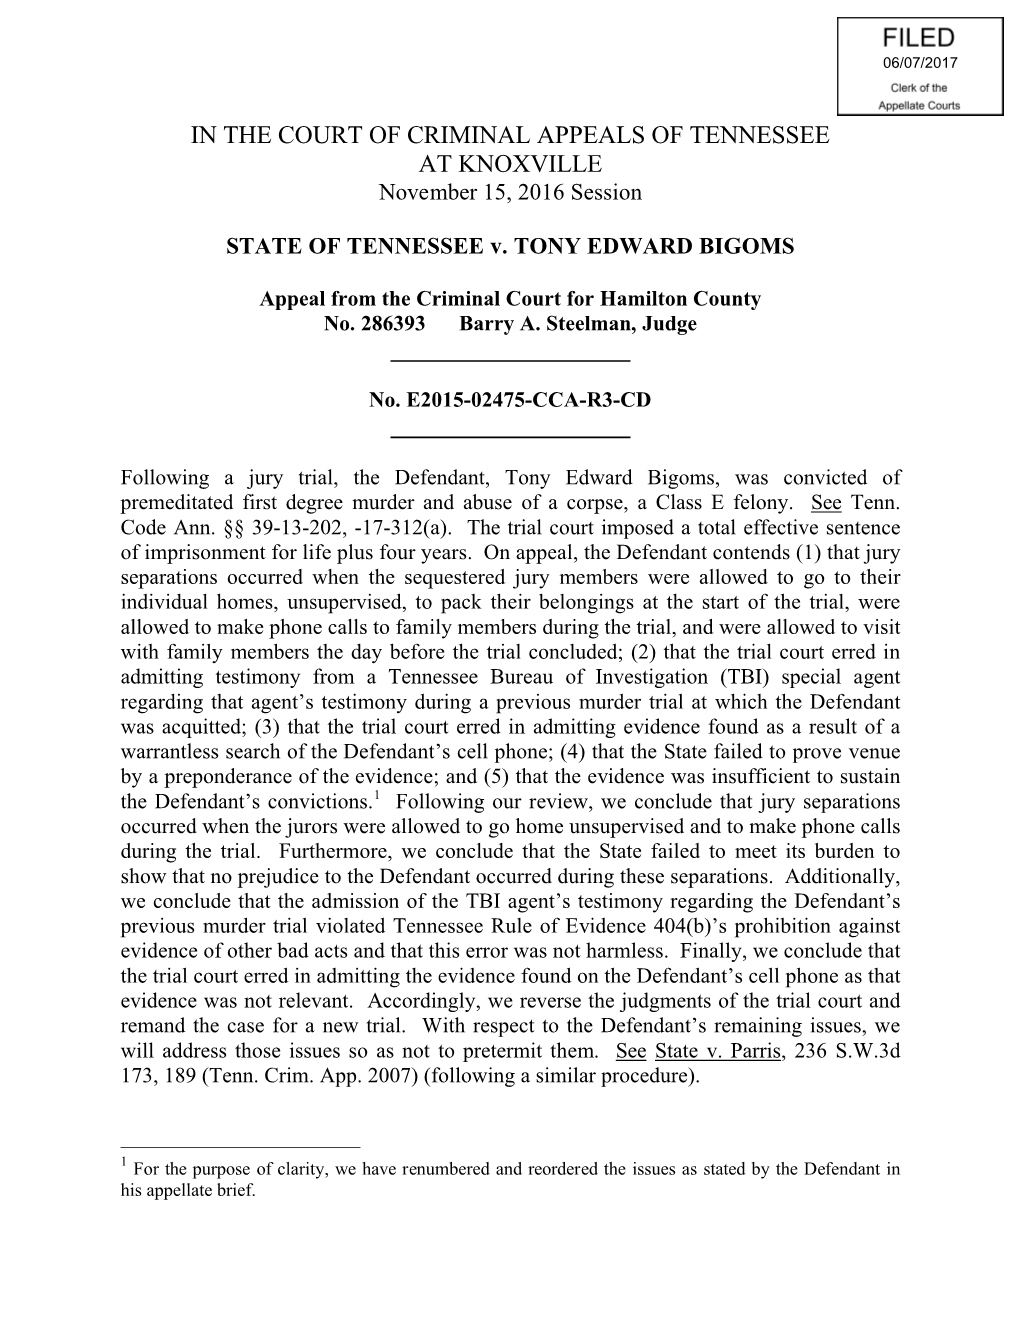 STATE of TENNESSEE V. TONY EDWARD BIGOMS